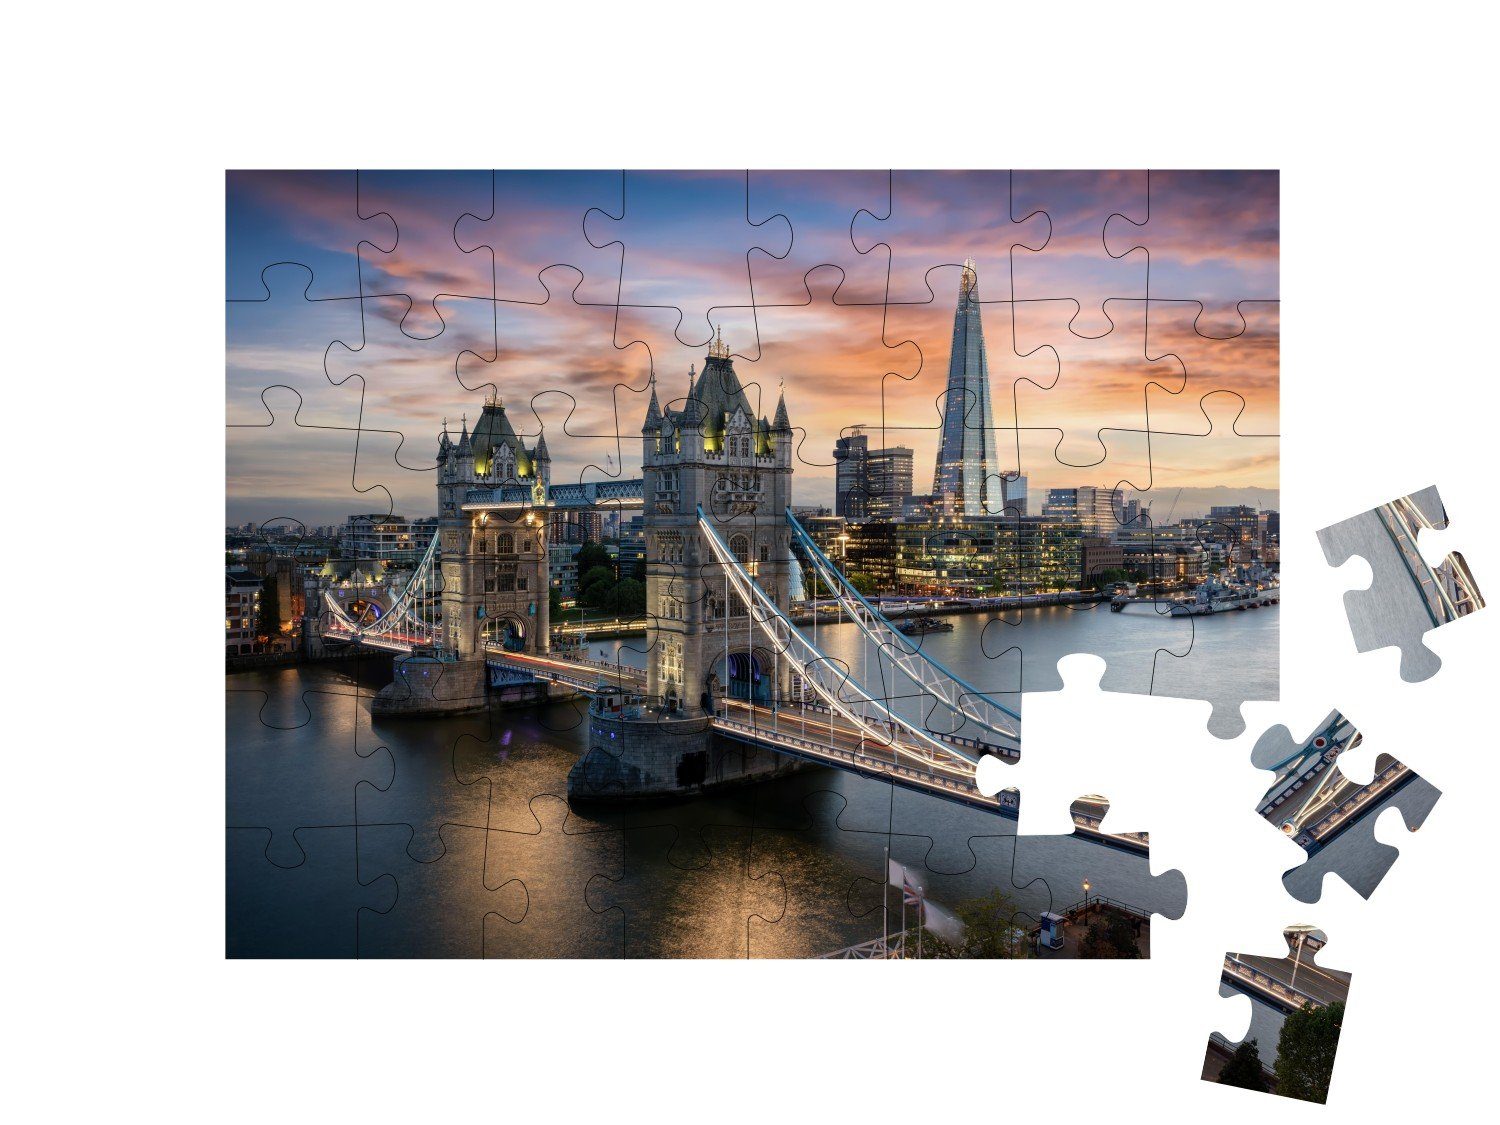 auf England, Europa, London, puzzleYOU-Kollektionen England Bridge, 48 Städte, Tower die Puzzle Blick Brücken, puzzleYOU London, Puzzleteile,